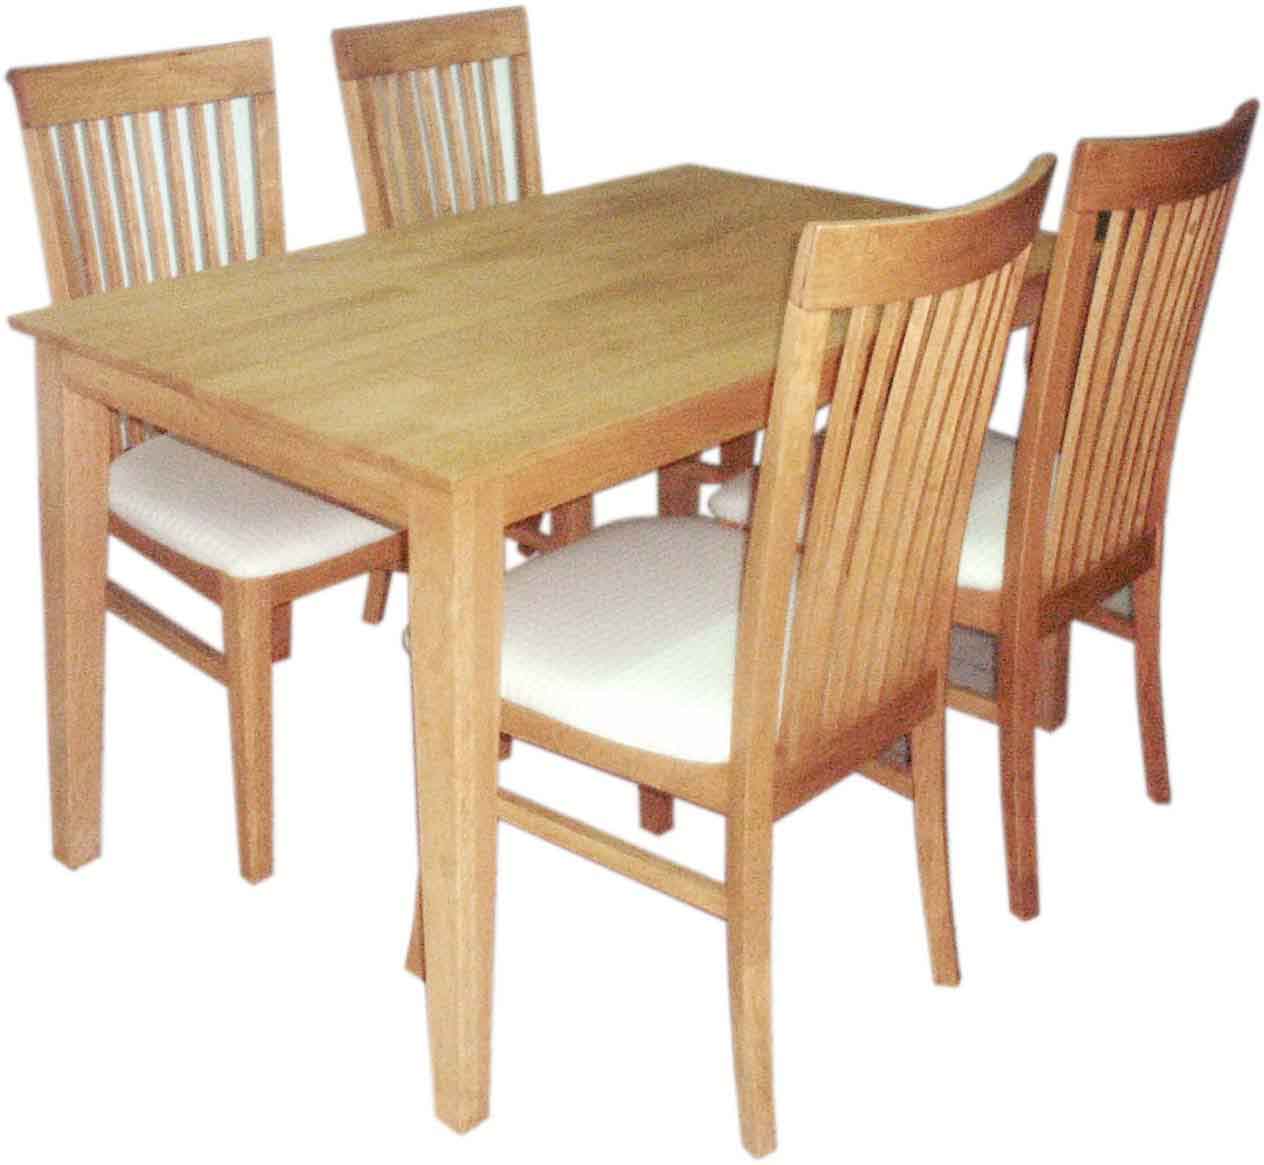 ชุดโต๊ะเก้าอี้รับประทานอาหาร (Pch-208)